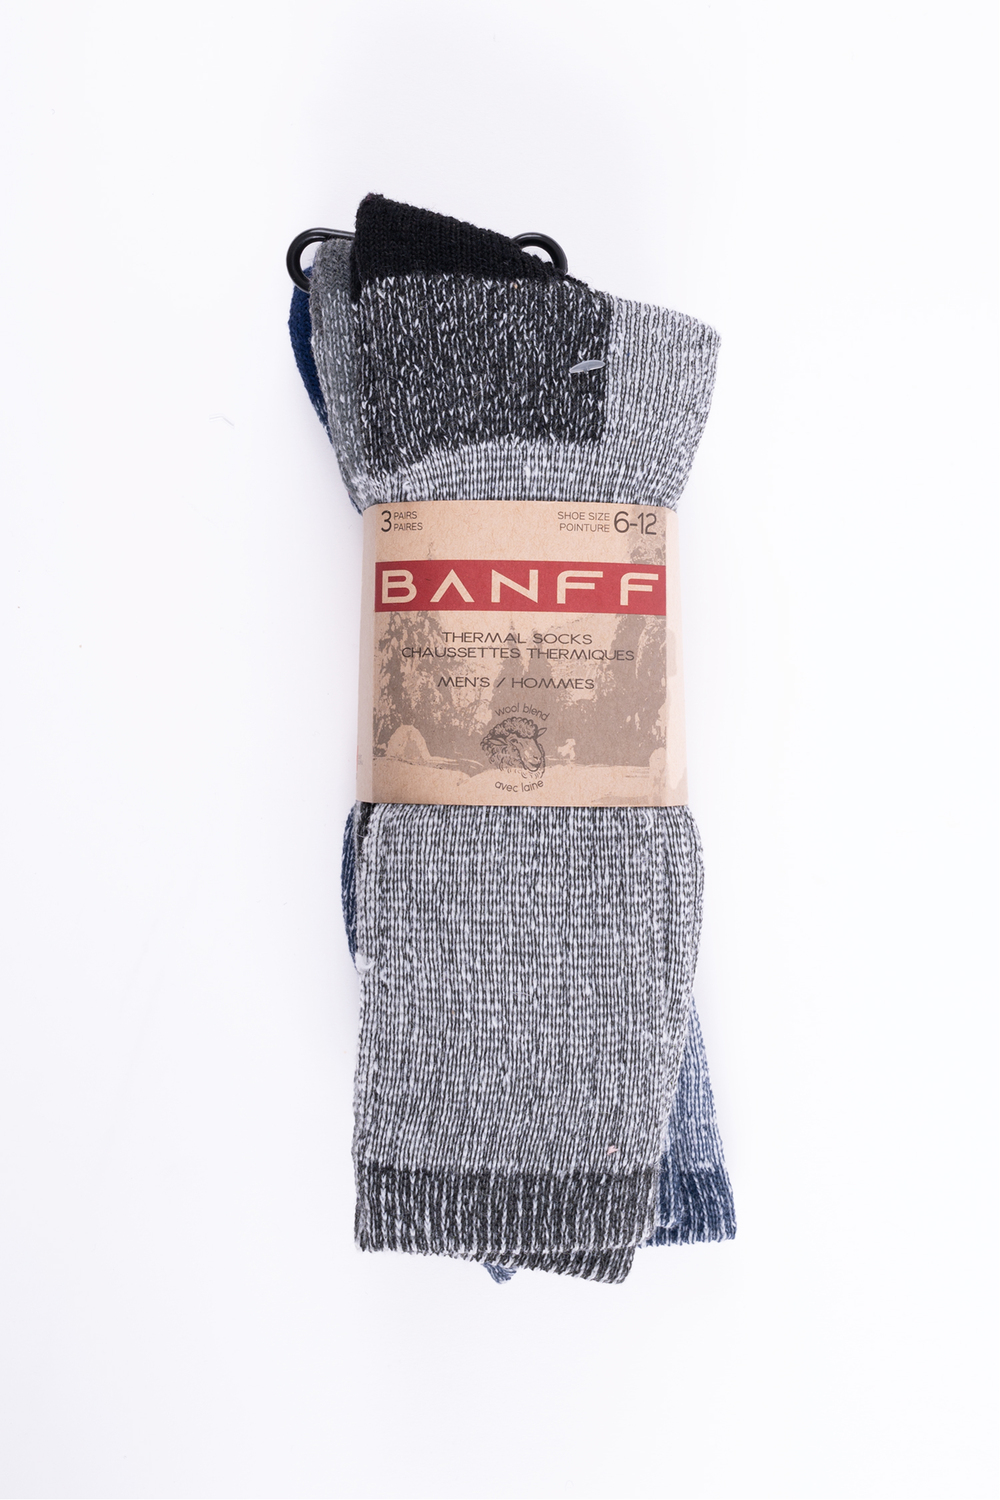 Banff - Chaussettes thermiques - 3 paires. Colour: grey. Size: 6